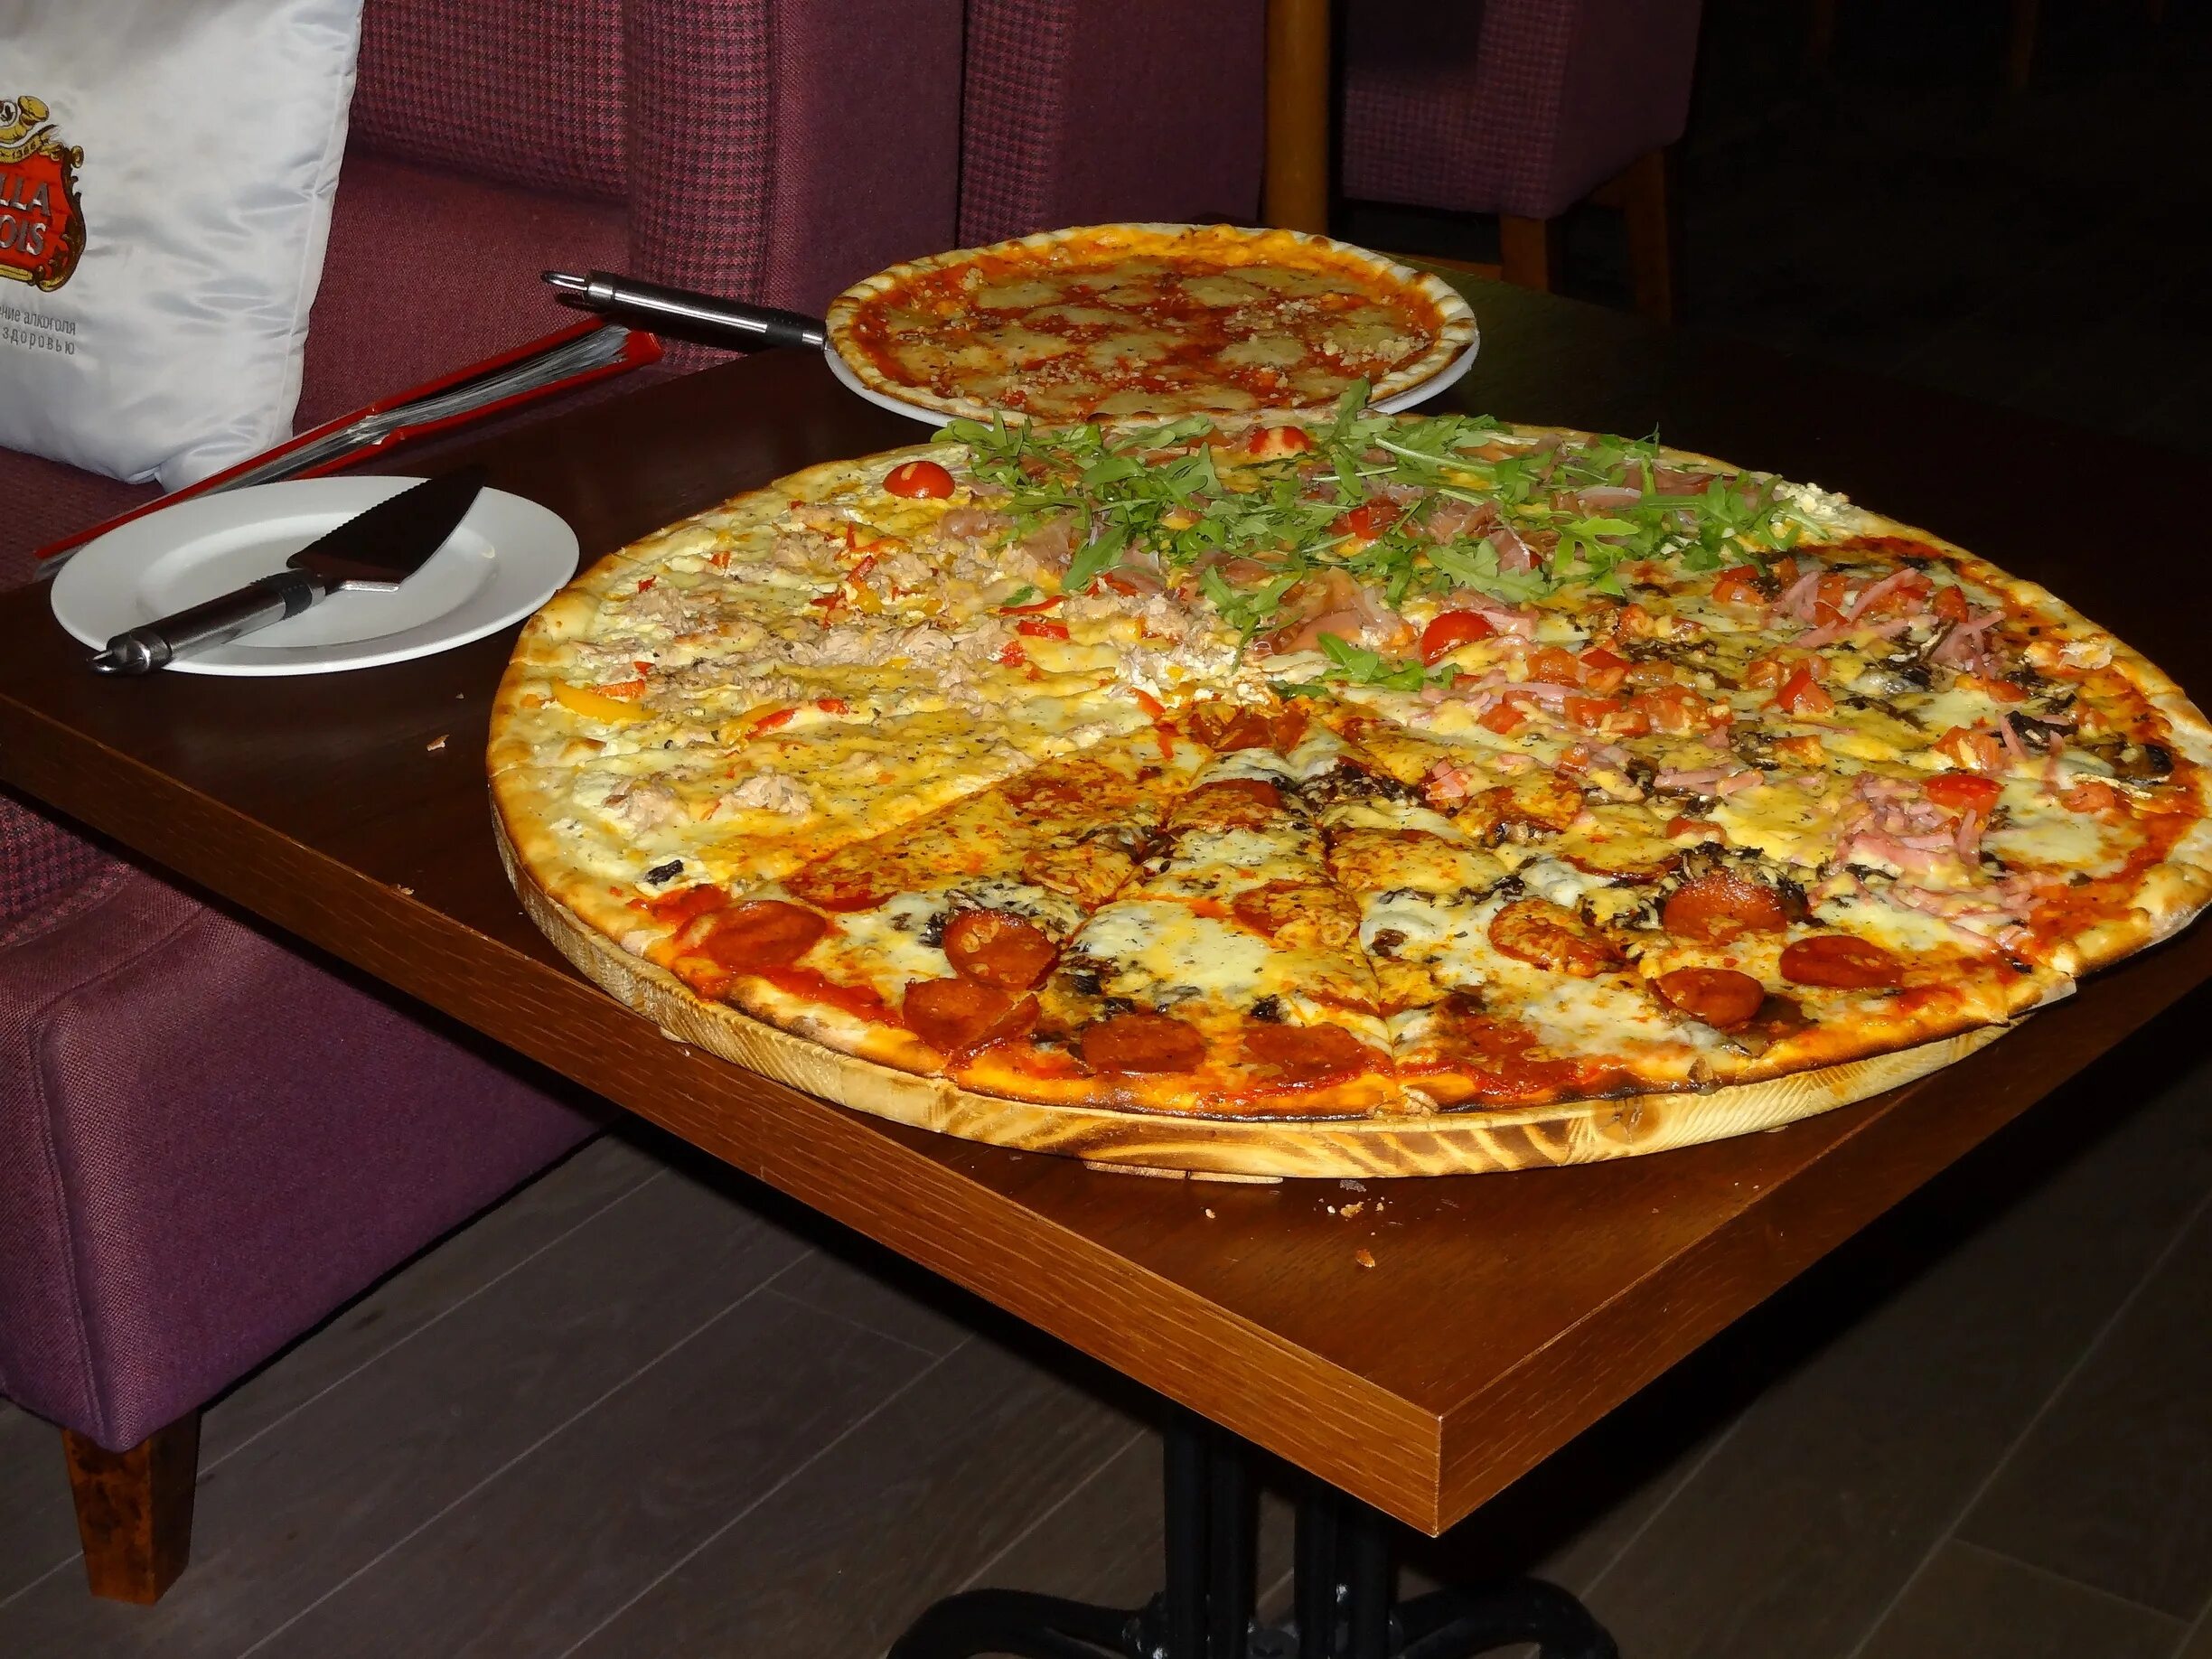 Доставка пиццы спб отзывы. Огромная пицца. Большая пицца в пиццерии. Огромная пицца в Питере. Вкусные пицца в кафе.